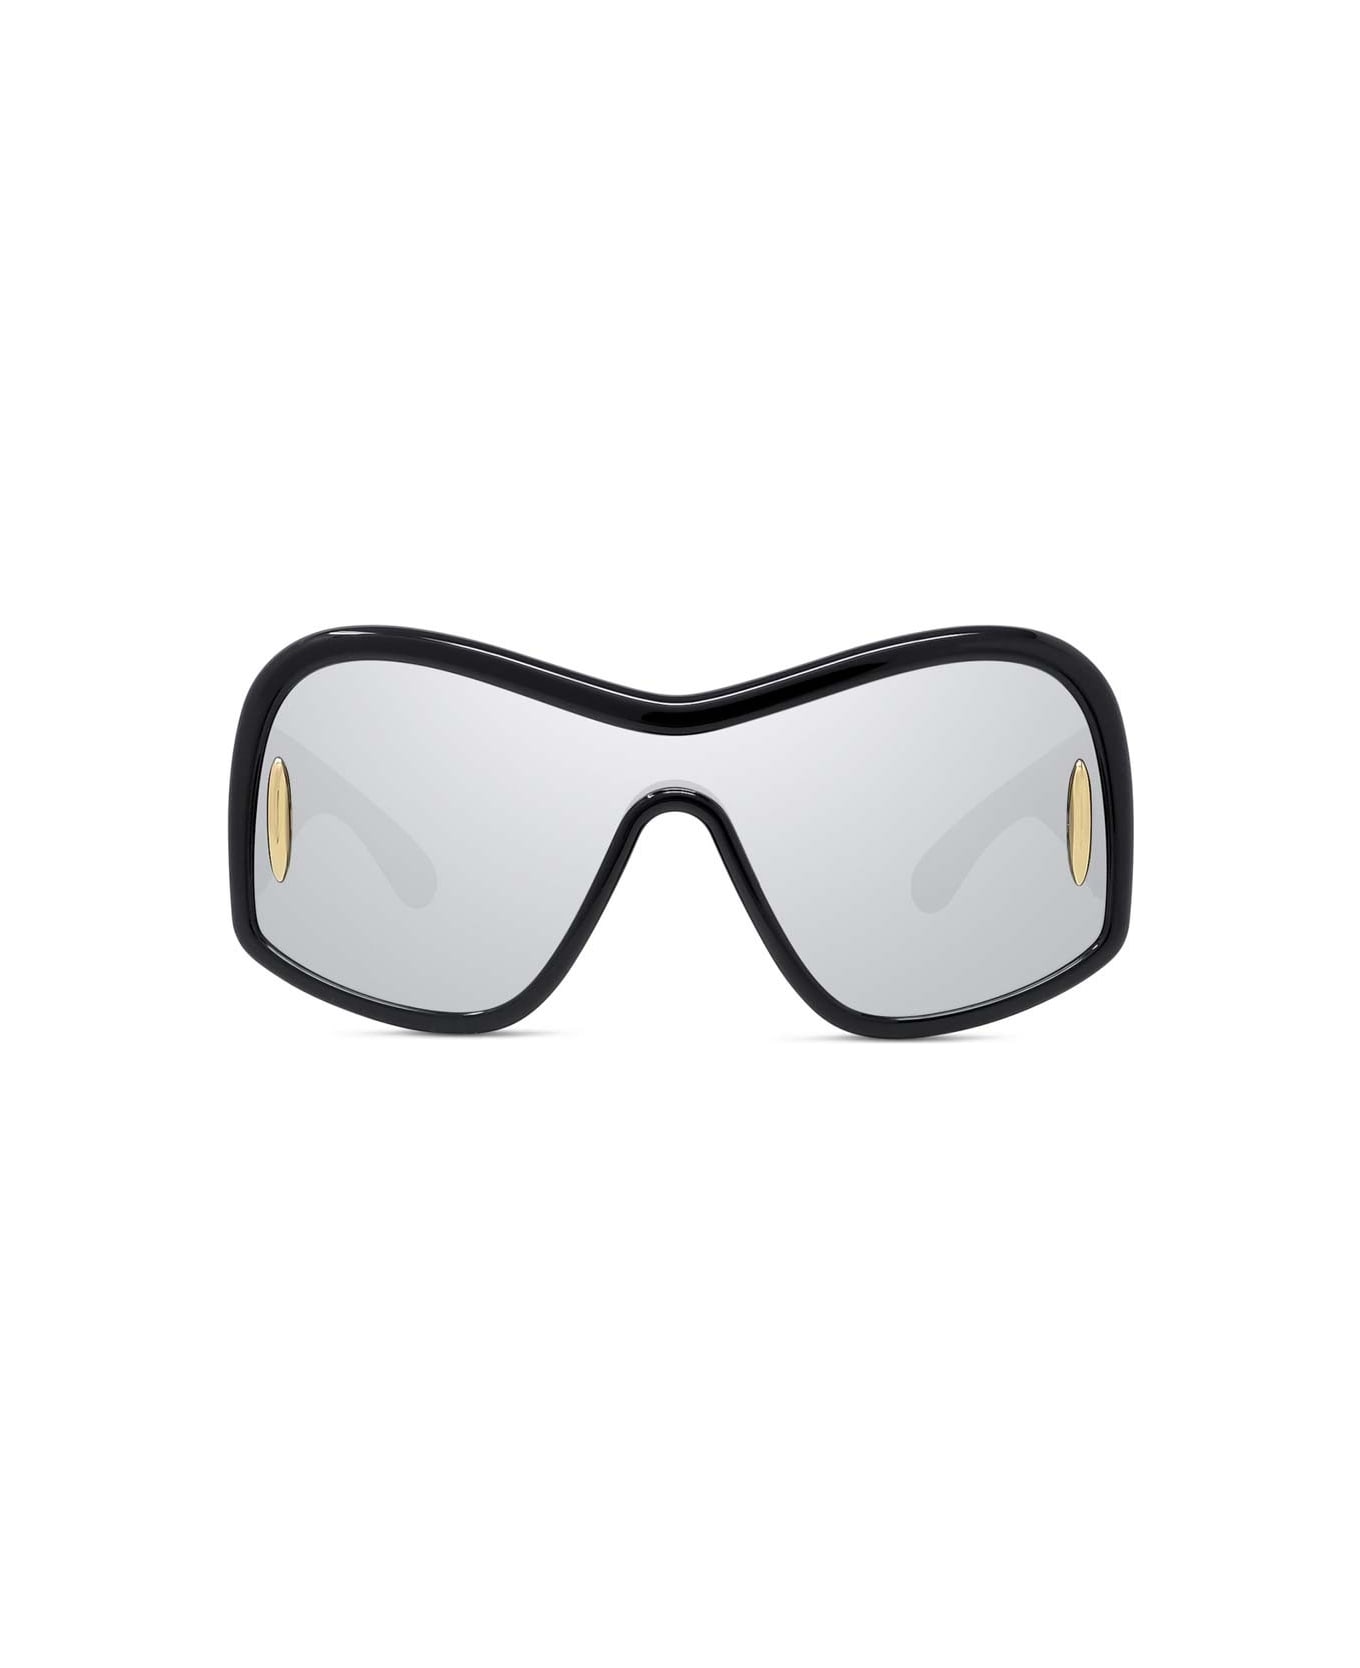 Loewe Sunglasses - Nero/Silver